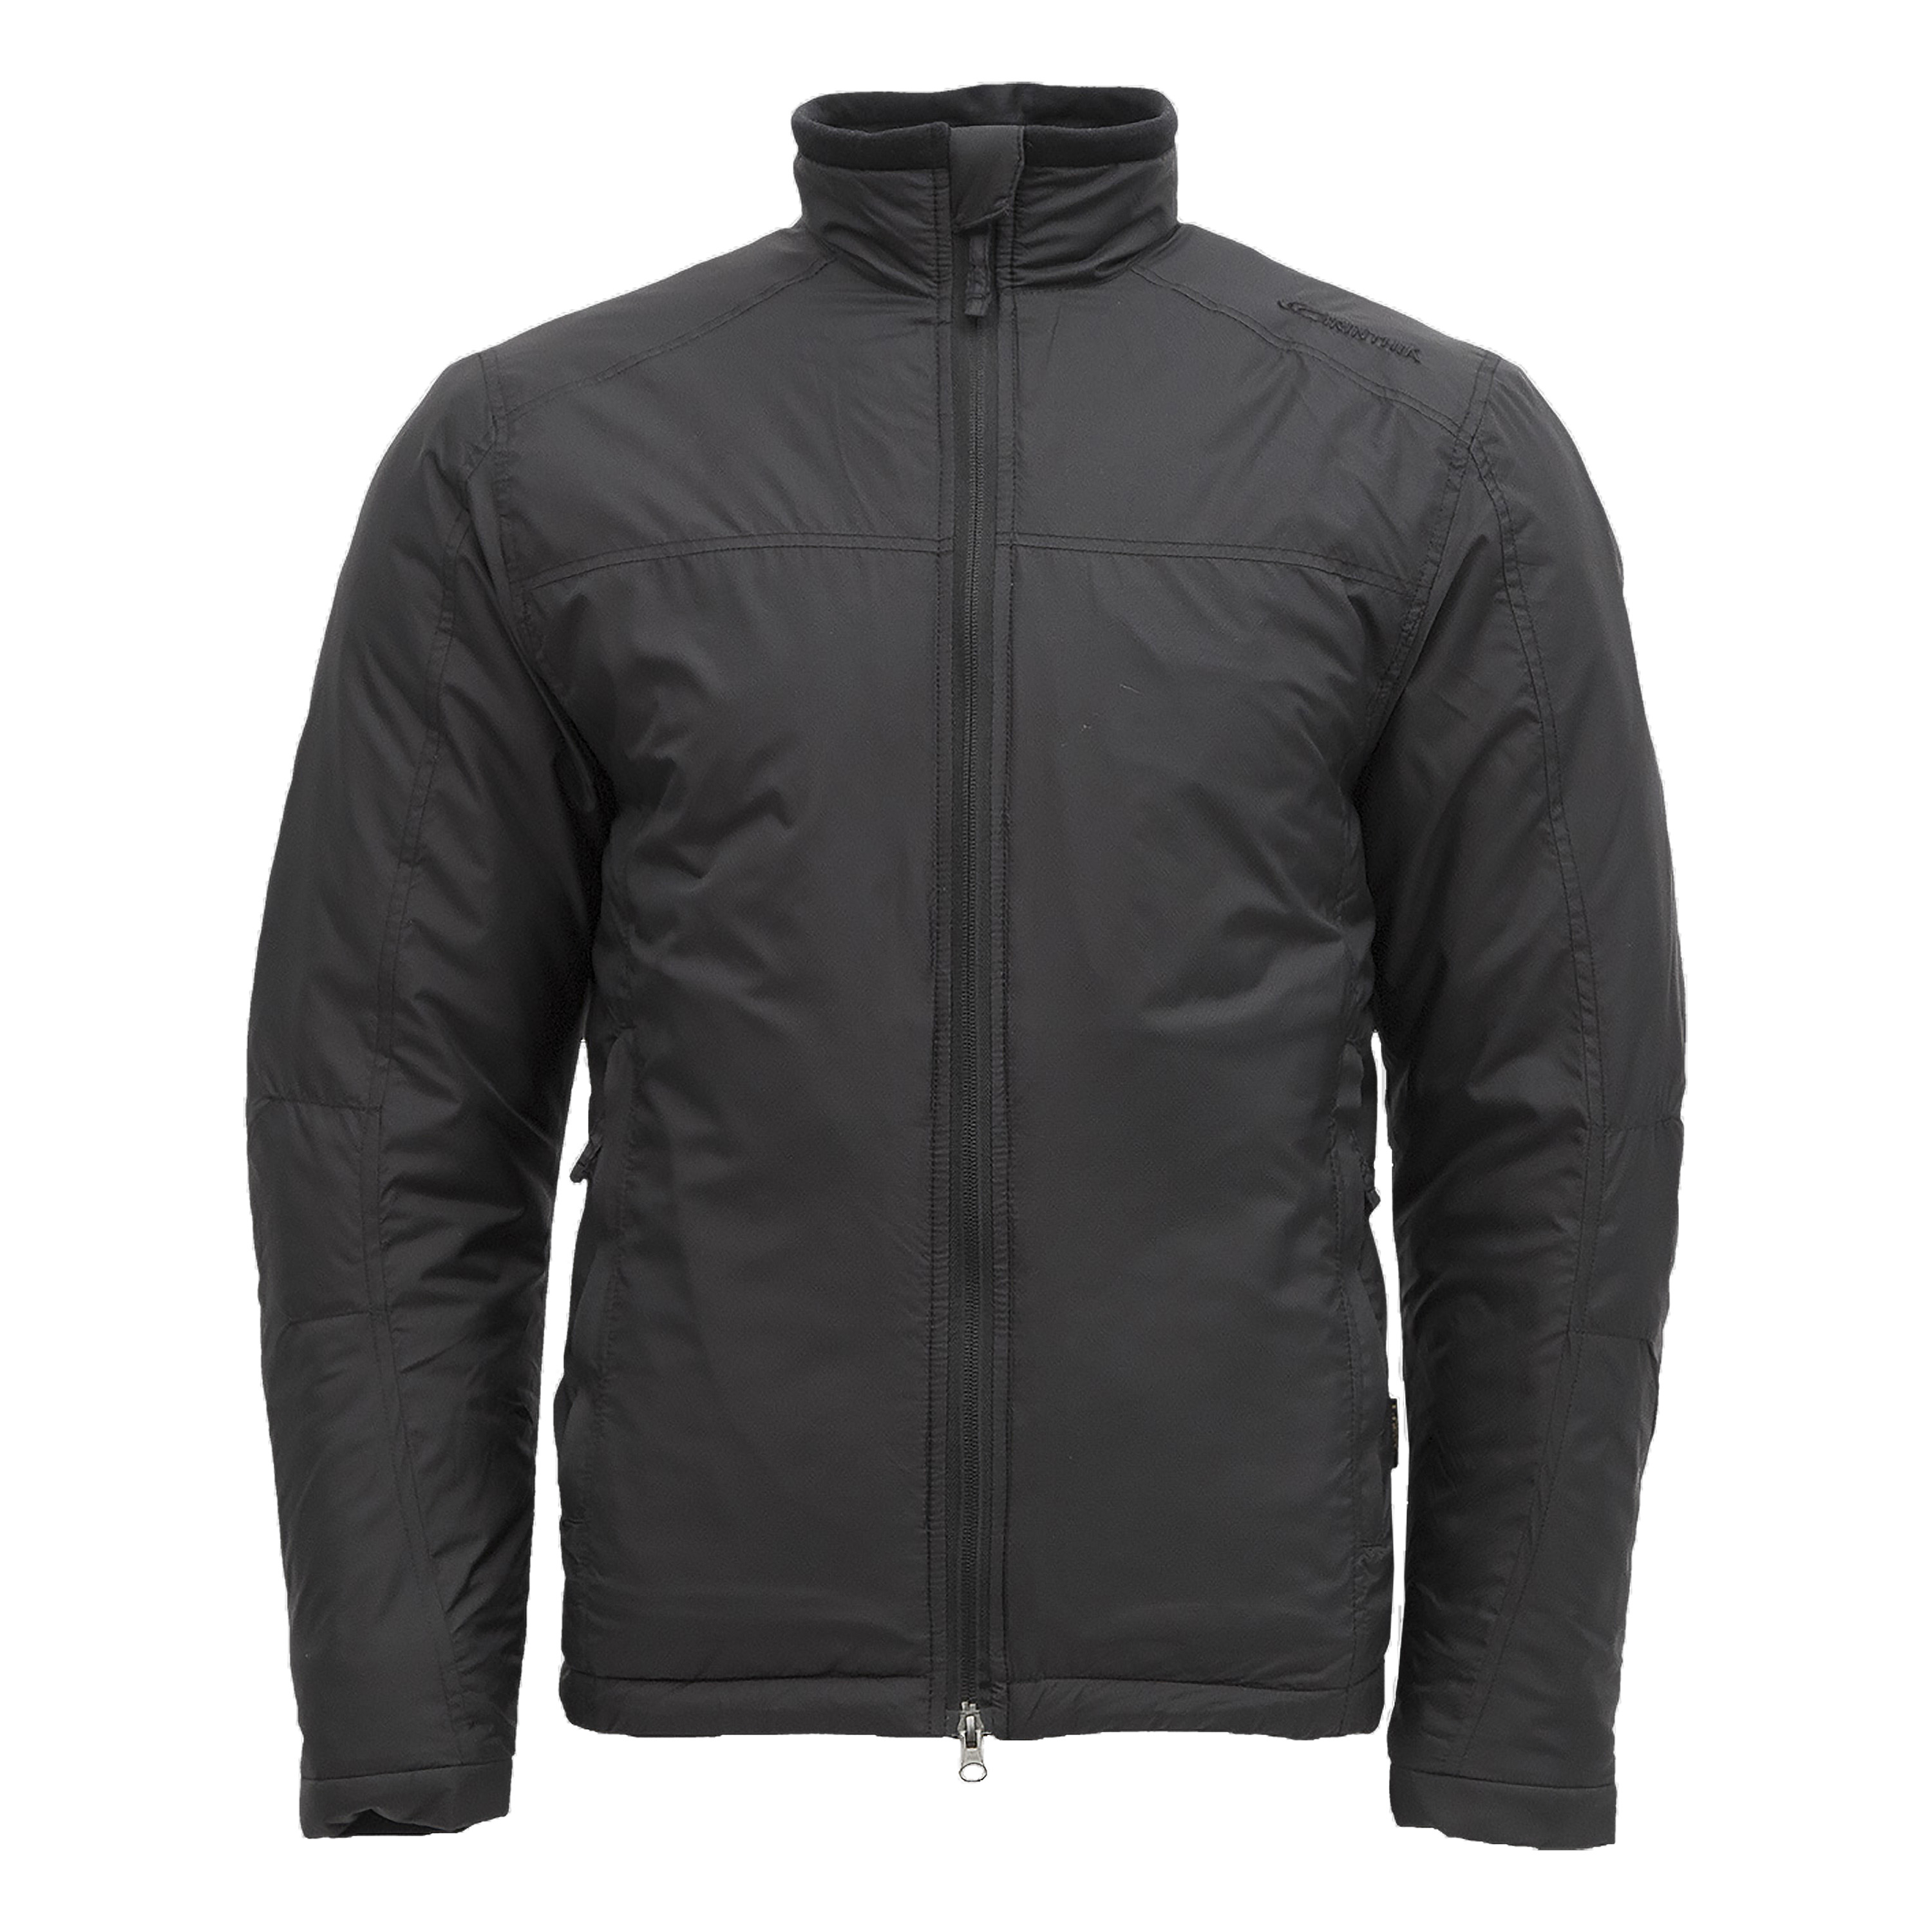 Carinthia LIG 3.0 Jacket Jacke Größe XXL Thermojacke Outdoorjacke schwarz 